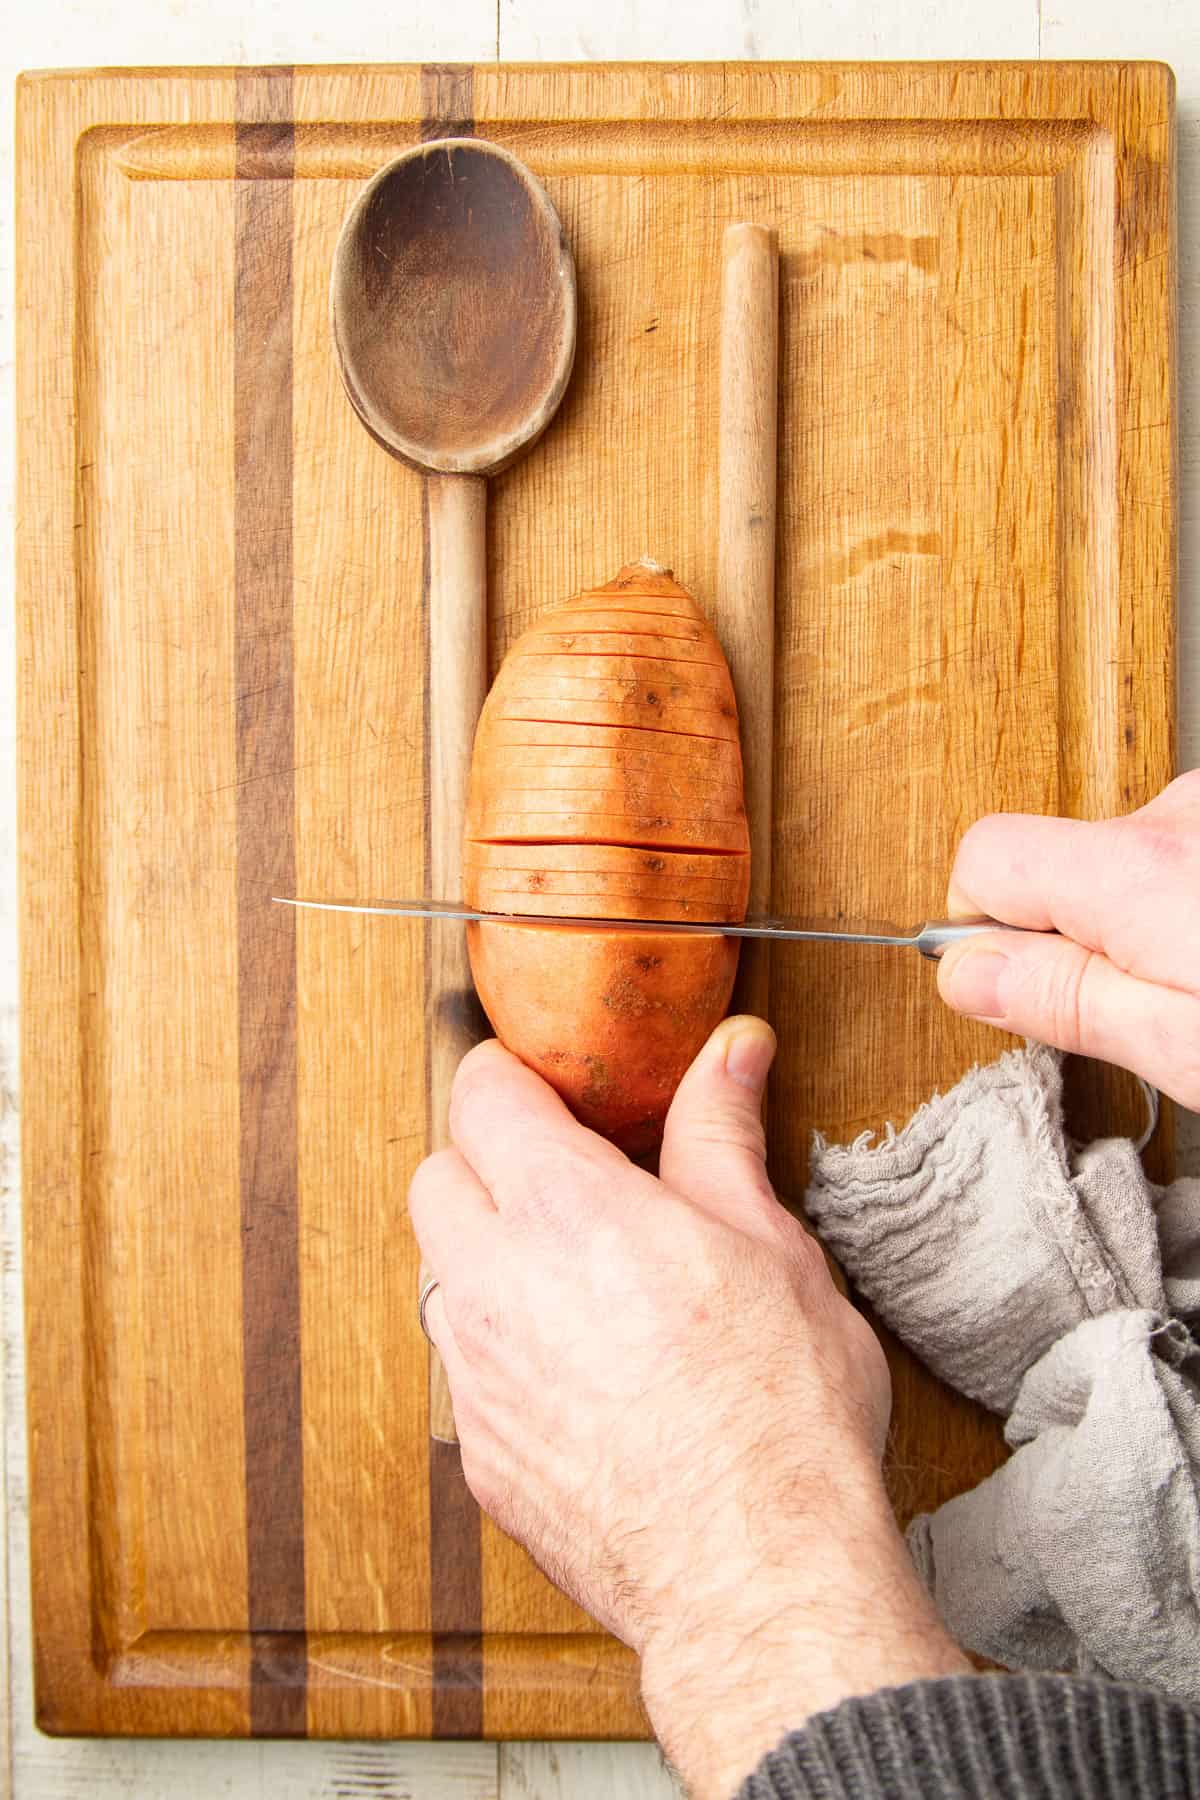 Hands slicing a hasselback arrangement into a sweet potato.